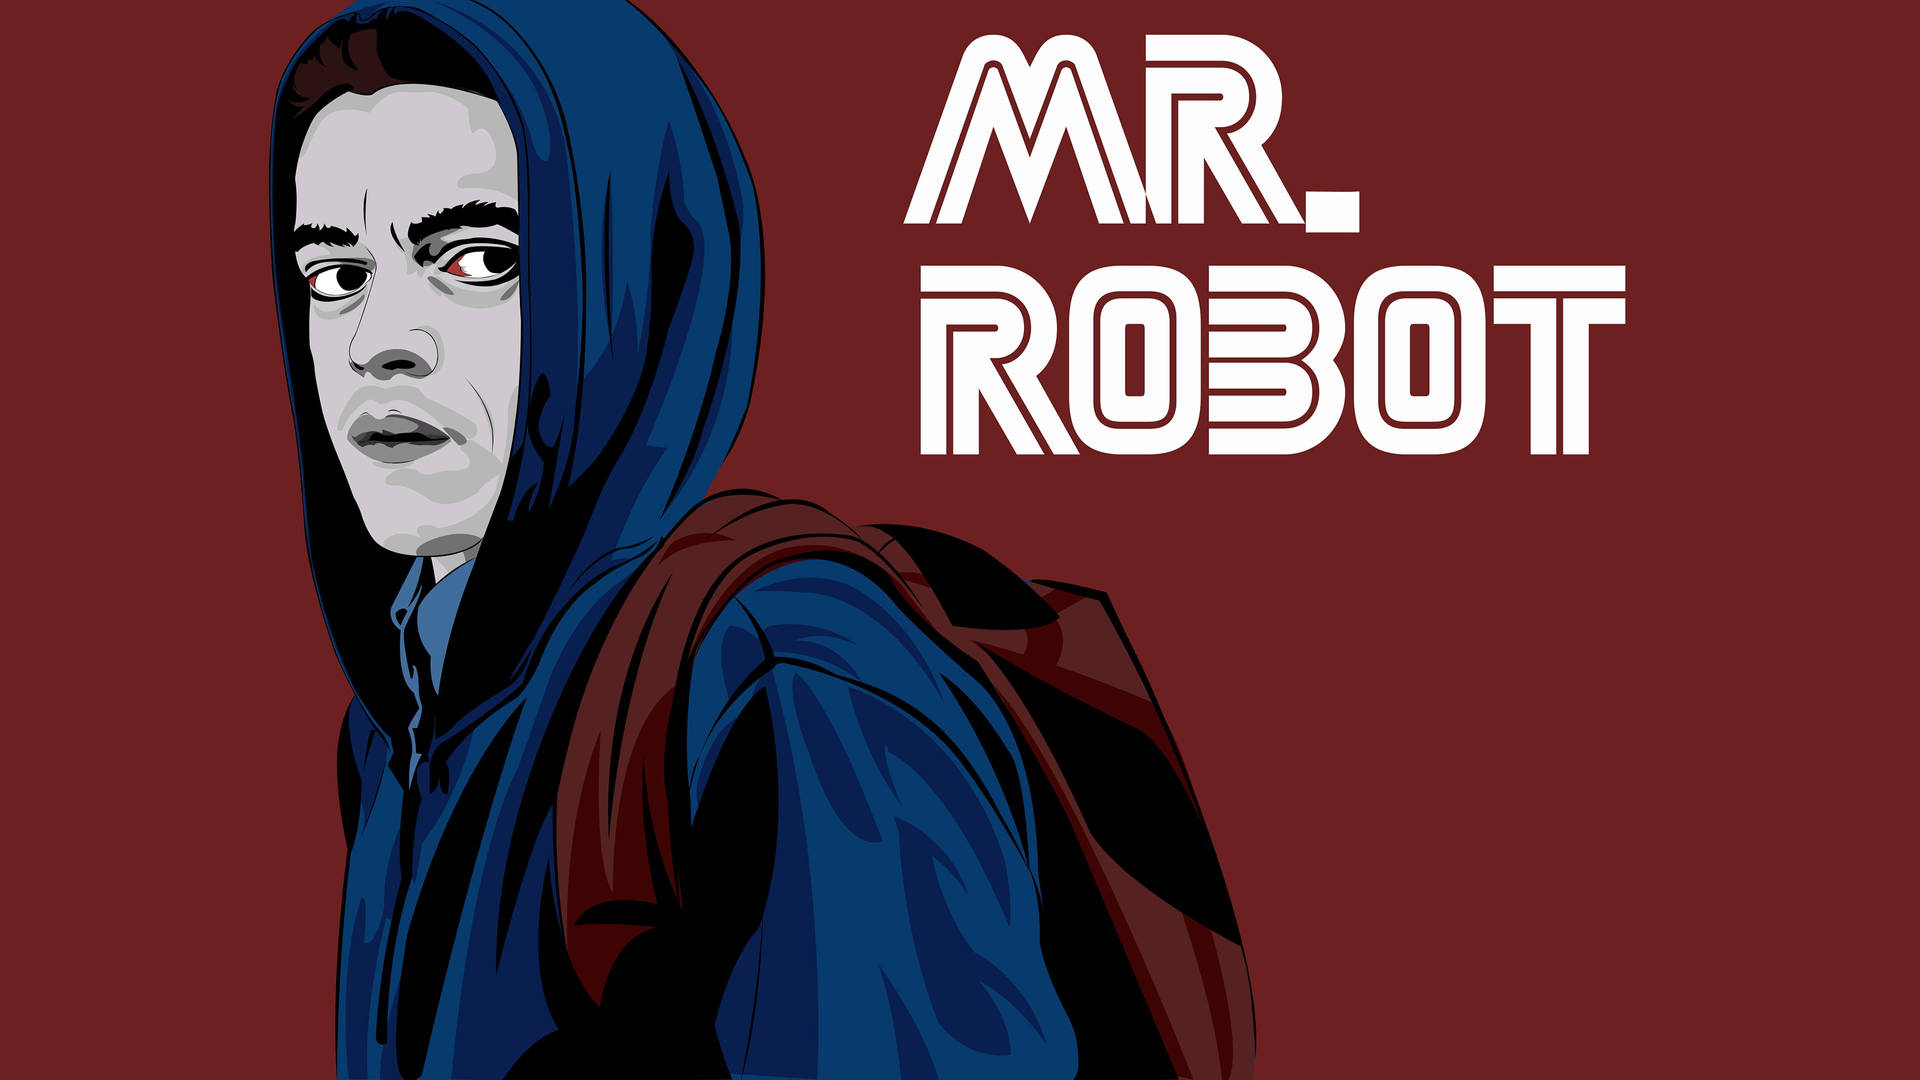 Mr robot, Robot wallpaper, Robot